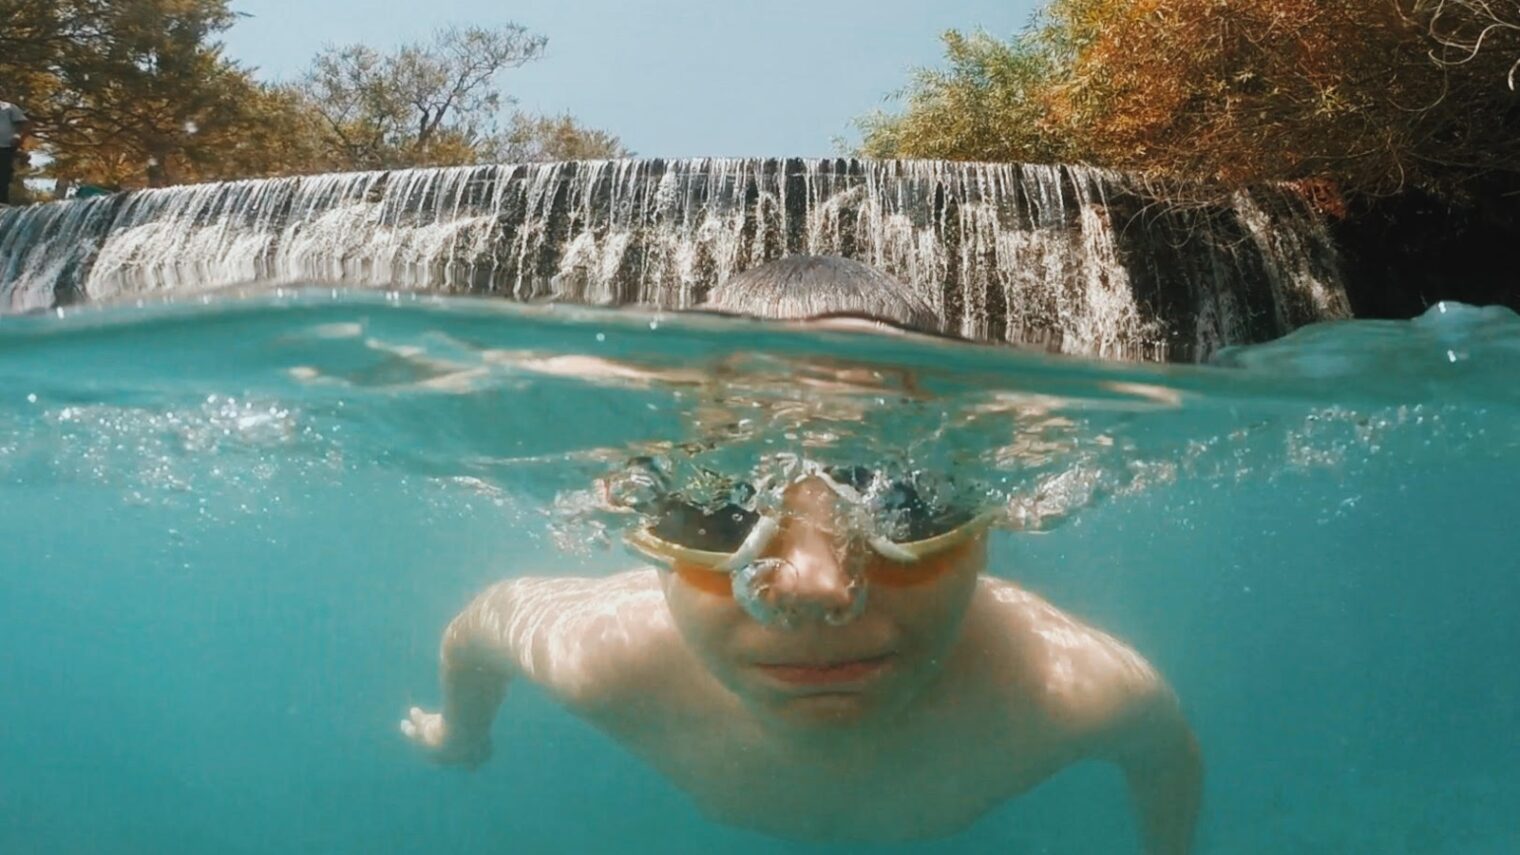 A young swimmer enjoying the springs at Gan HaShlosha National Park. Photo by Dina Alfasi